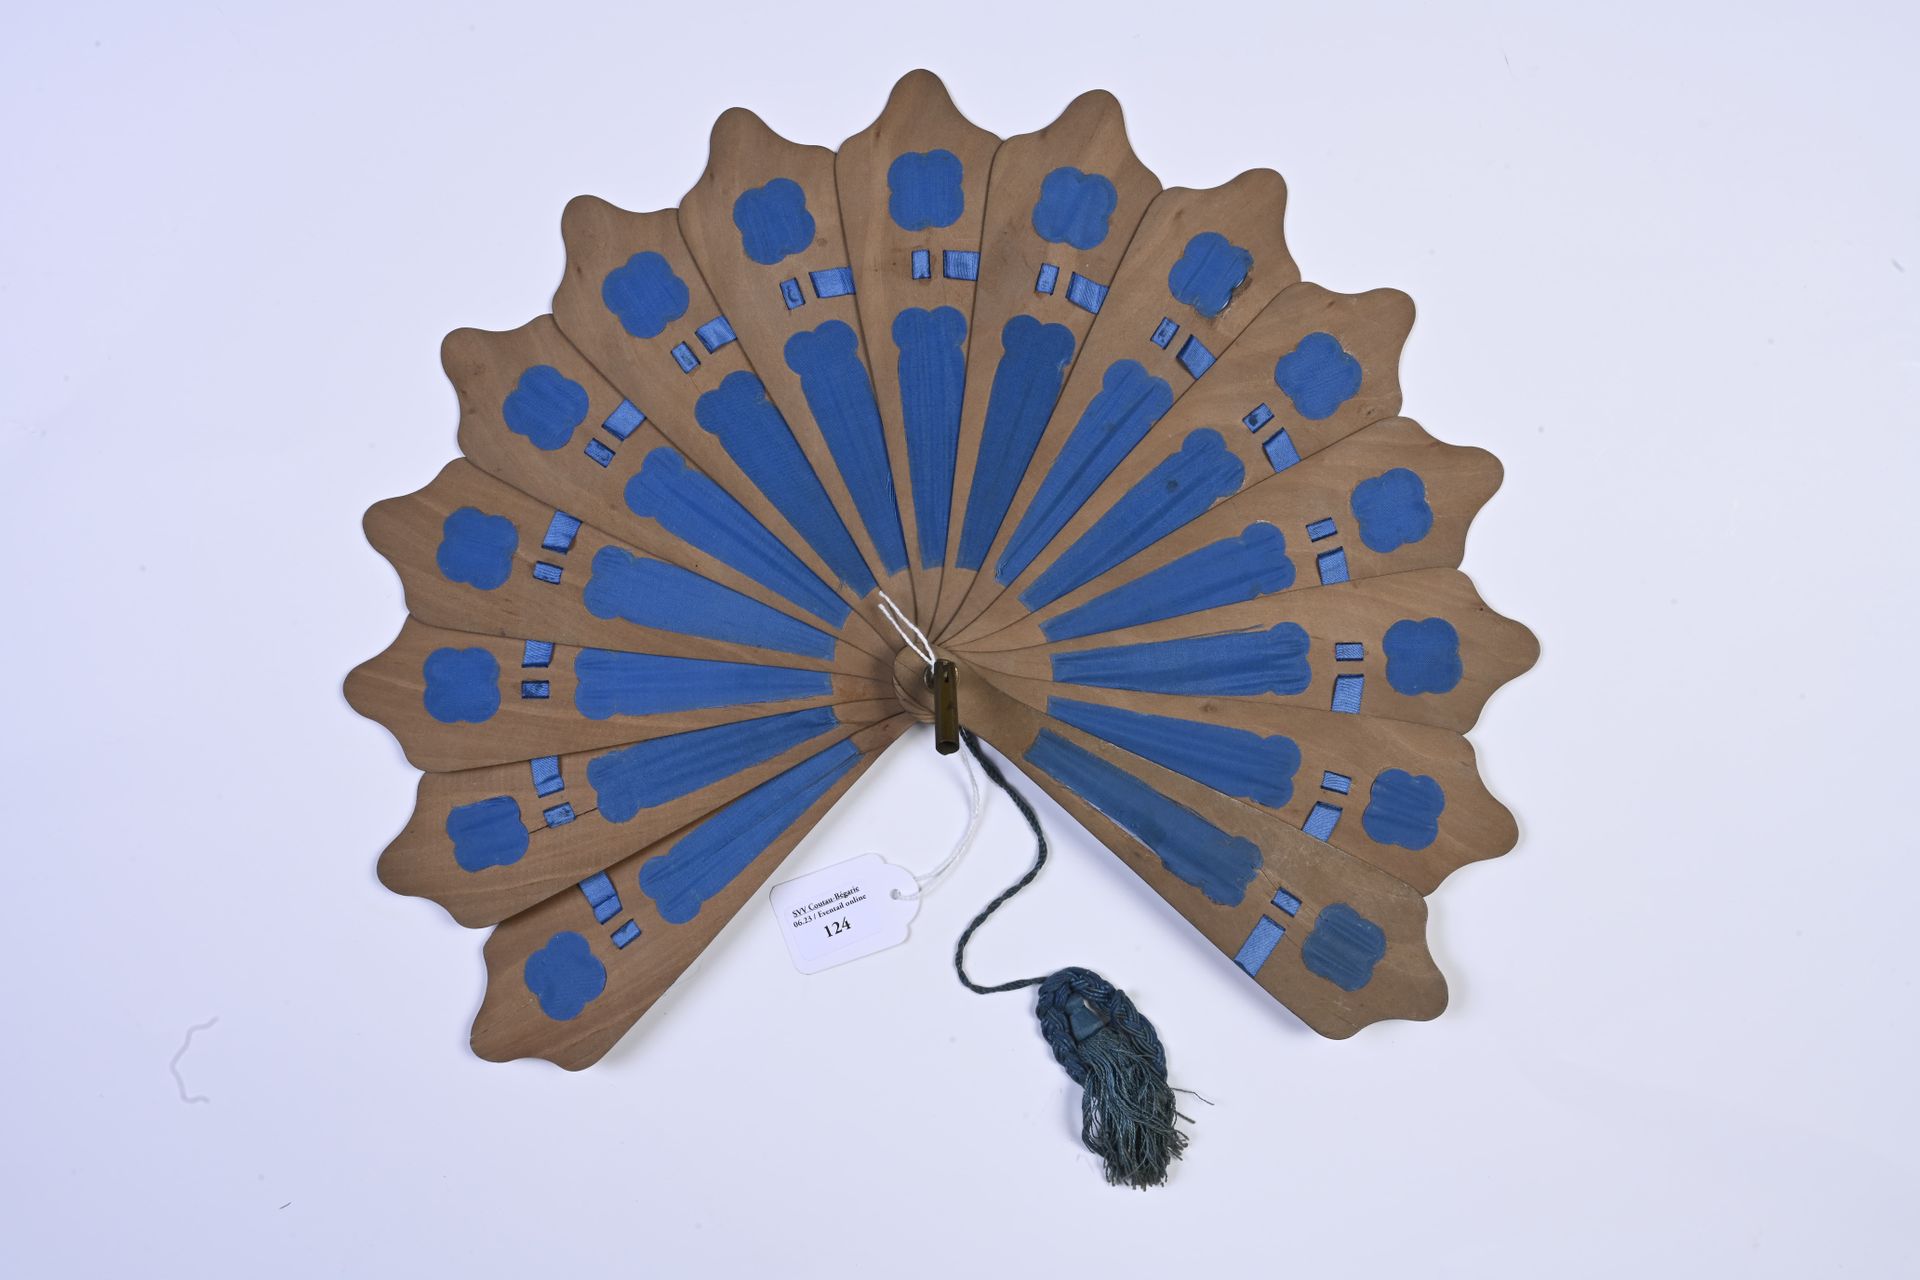 Null Paravento, Europa, 1880 circa
Le palmette in legno e seta blu, con sistema &hellip;